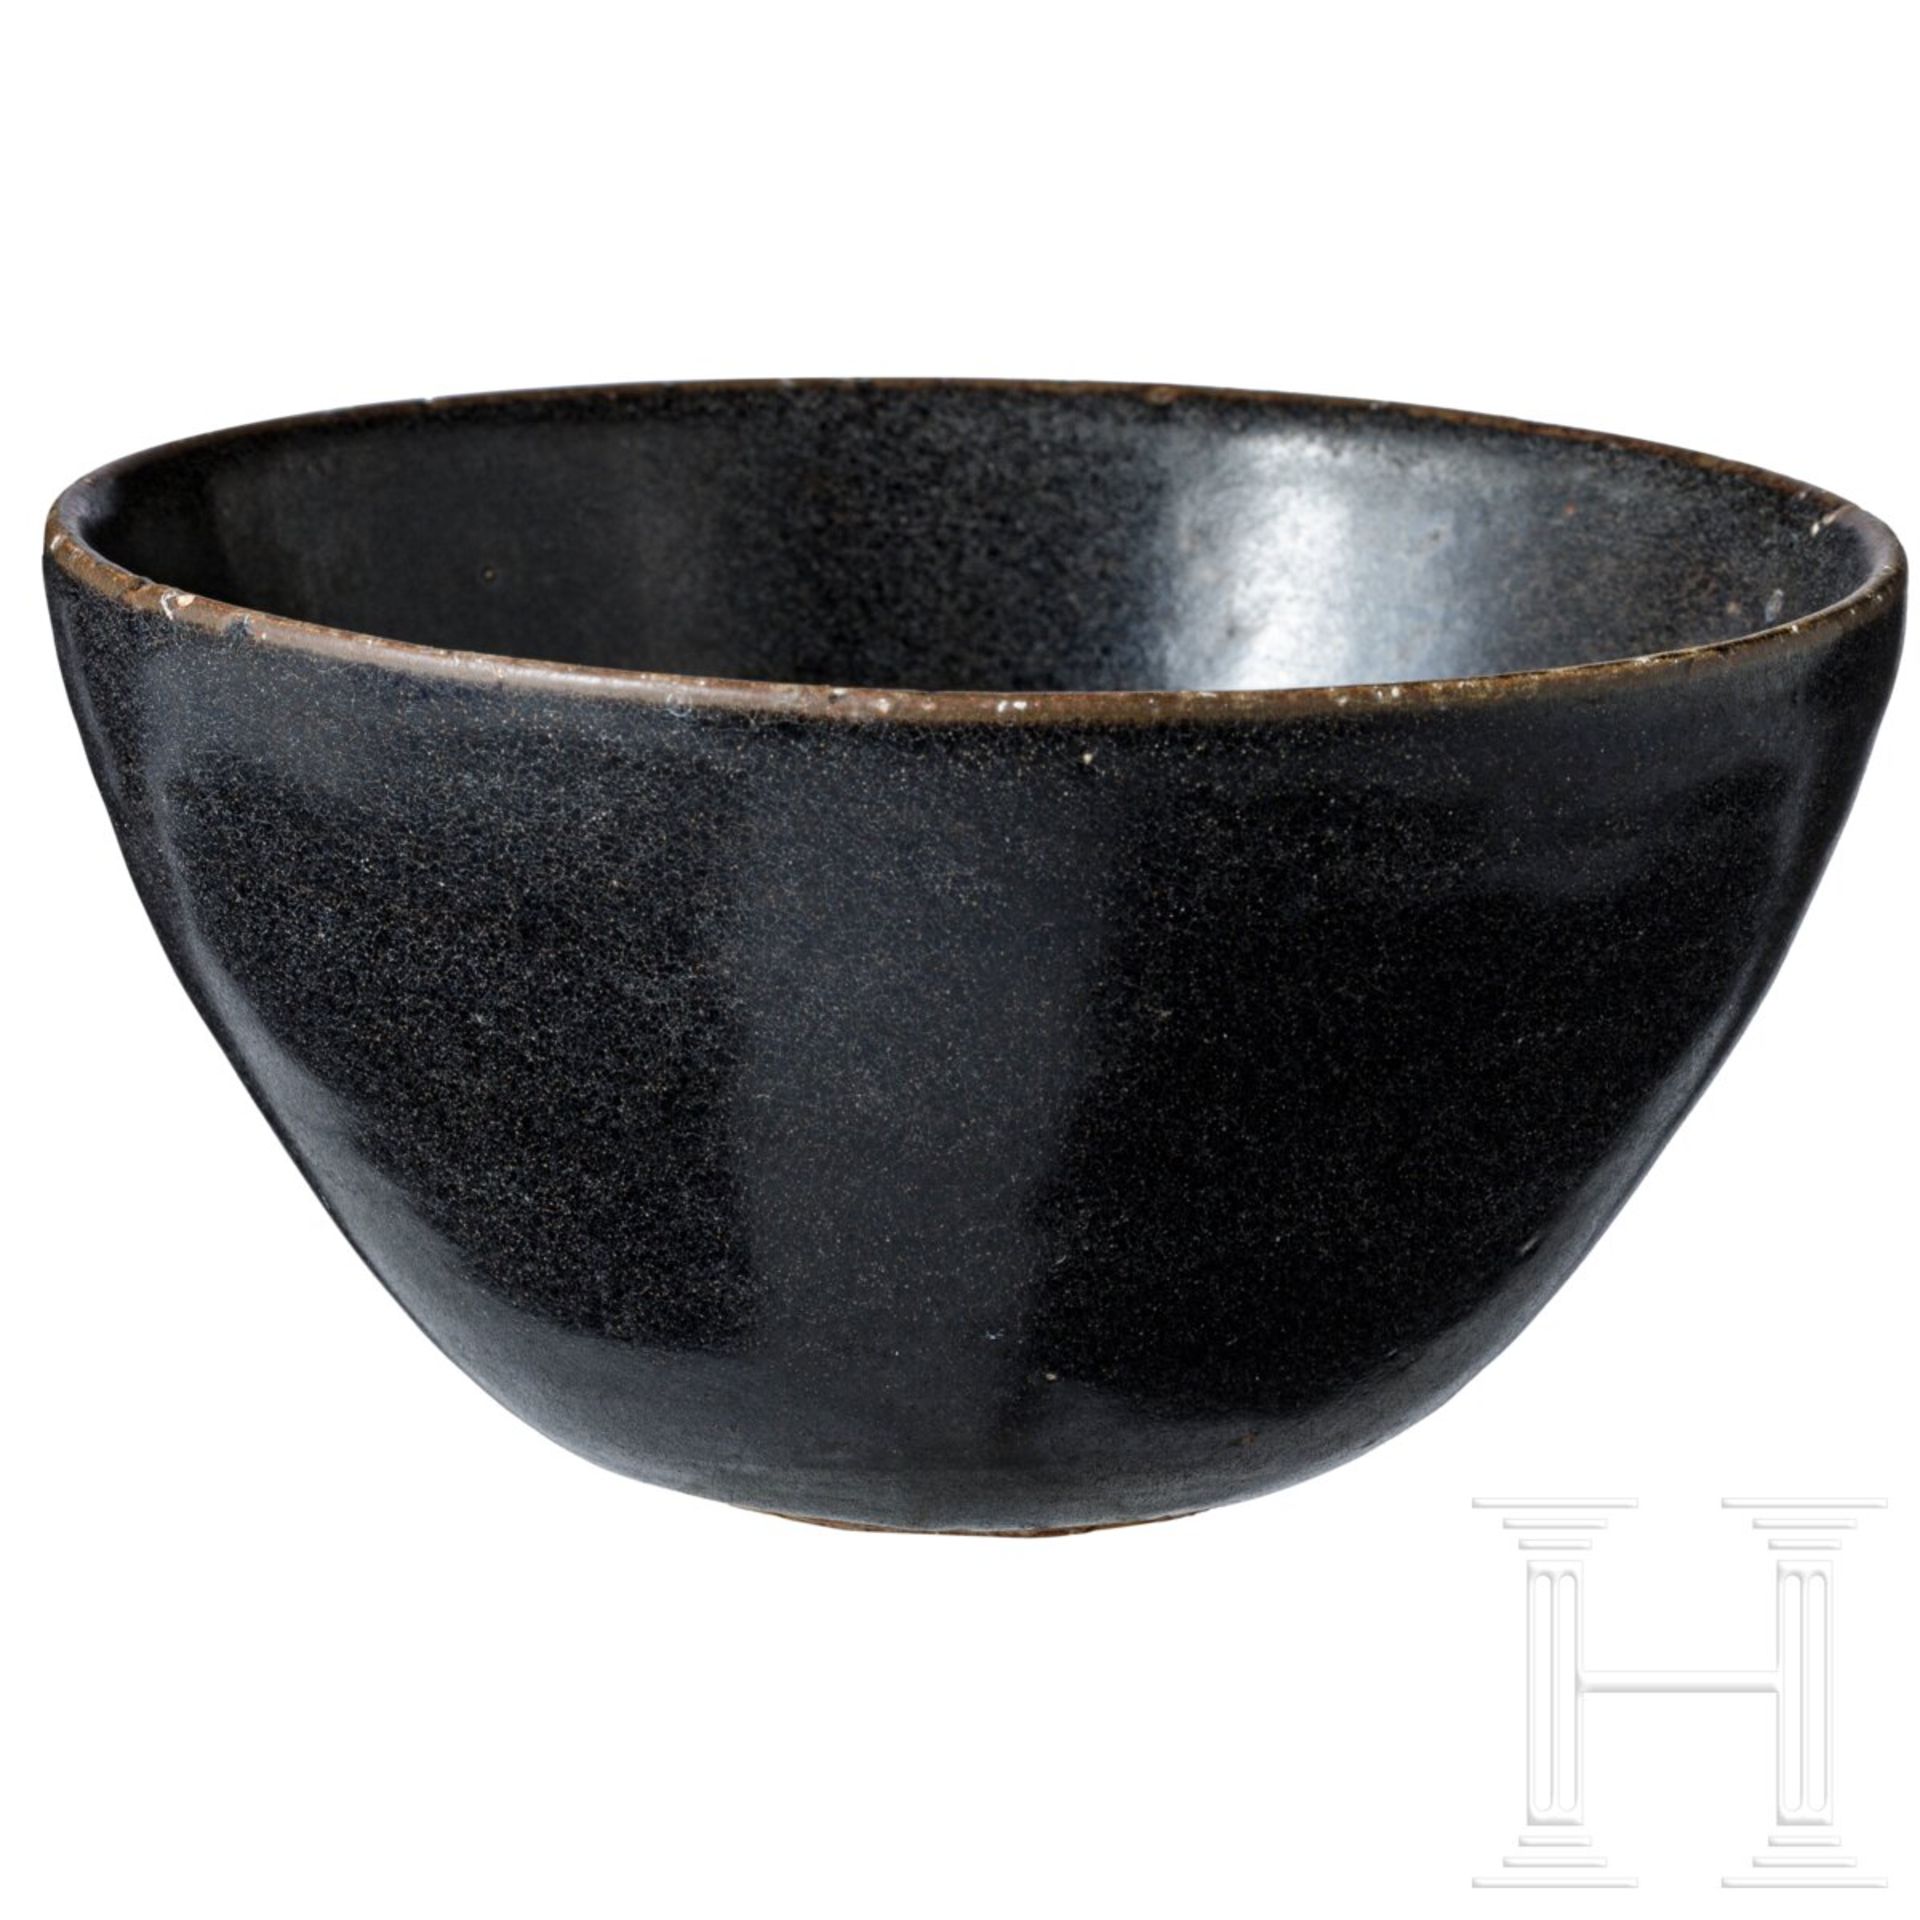 Jizhou-Teeschale, schwarz glasiert, wohl südliche Song-Dynastie (12. - 13. Jhdt.) - Image 3 of 17